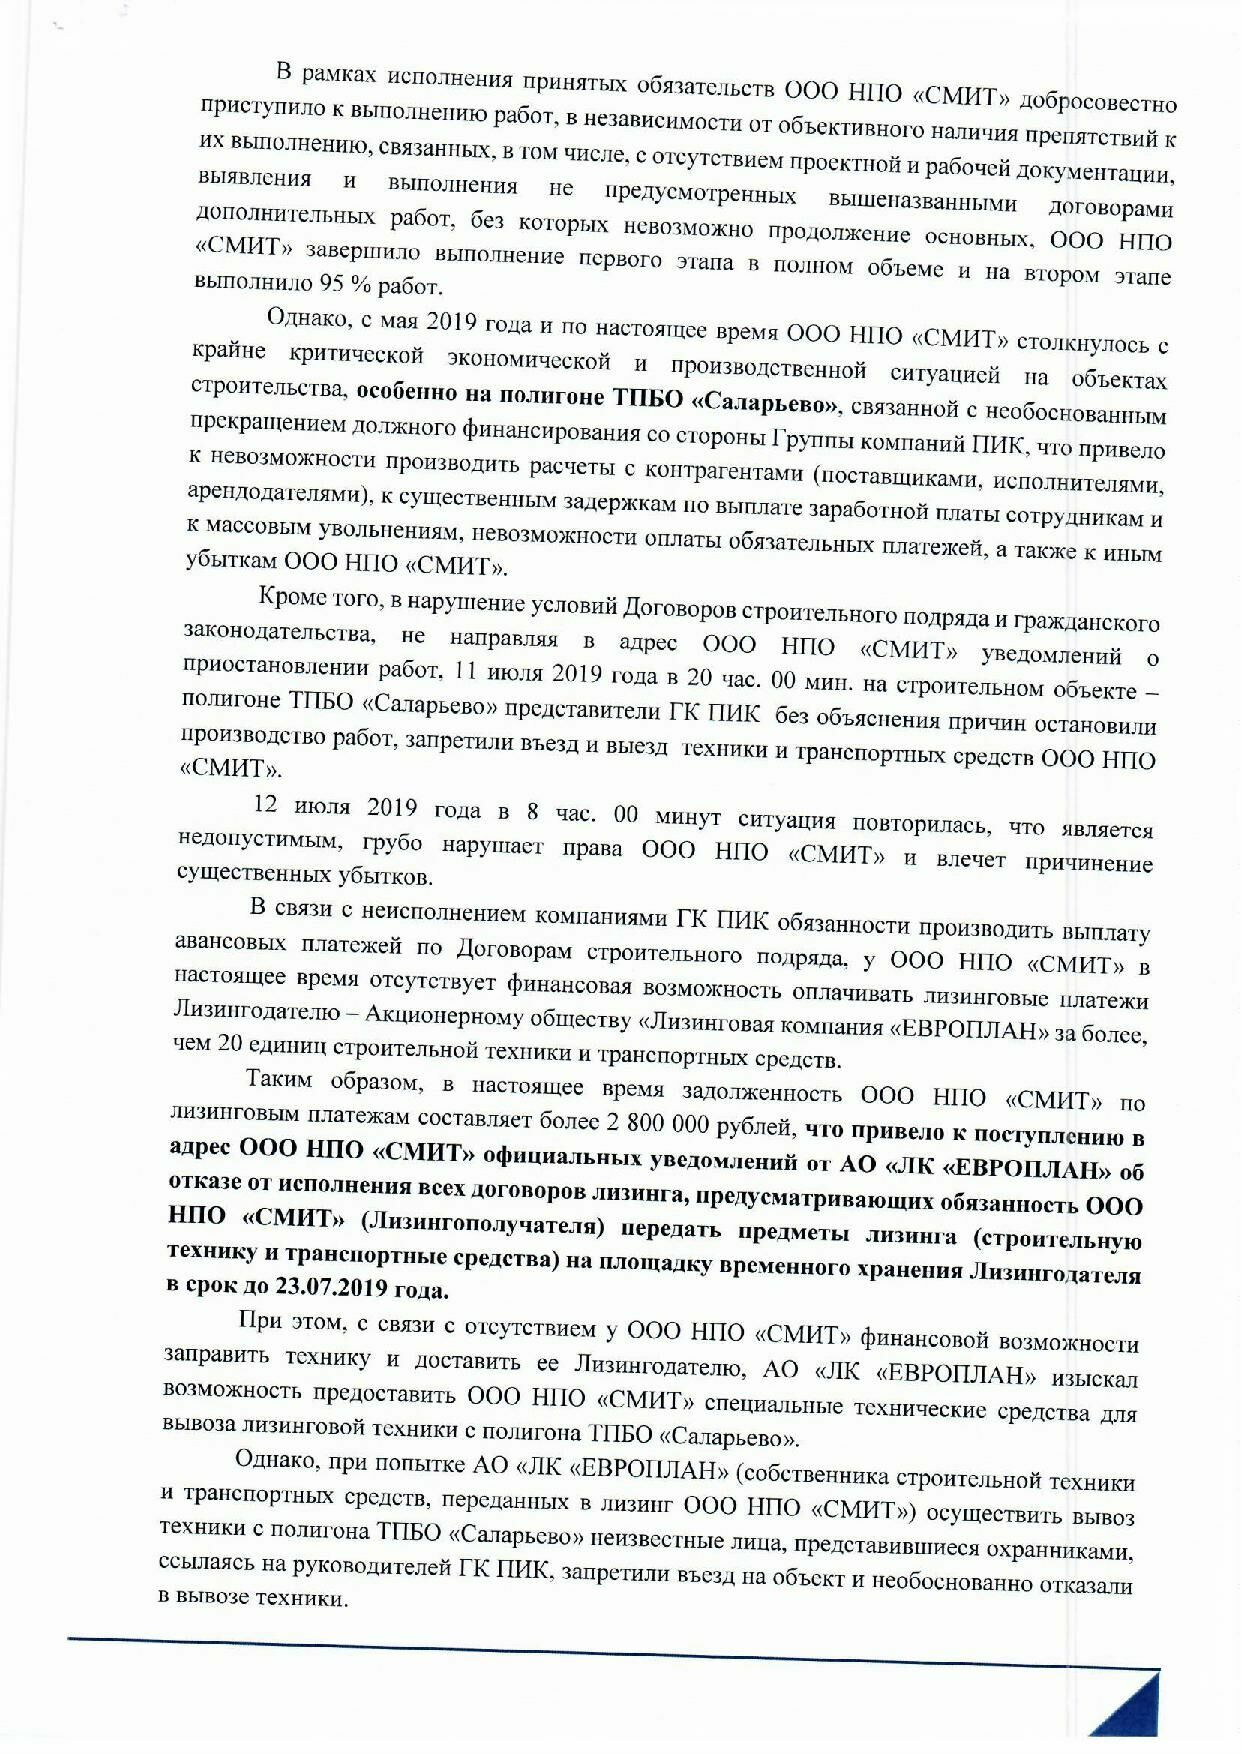 Письмо ООО НПО "СМИТ", адресованное руководителю ГК ПИК Сергею Гордееву, вторая страница